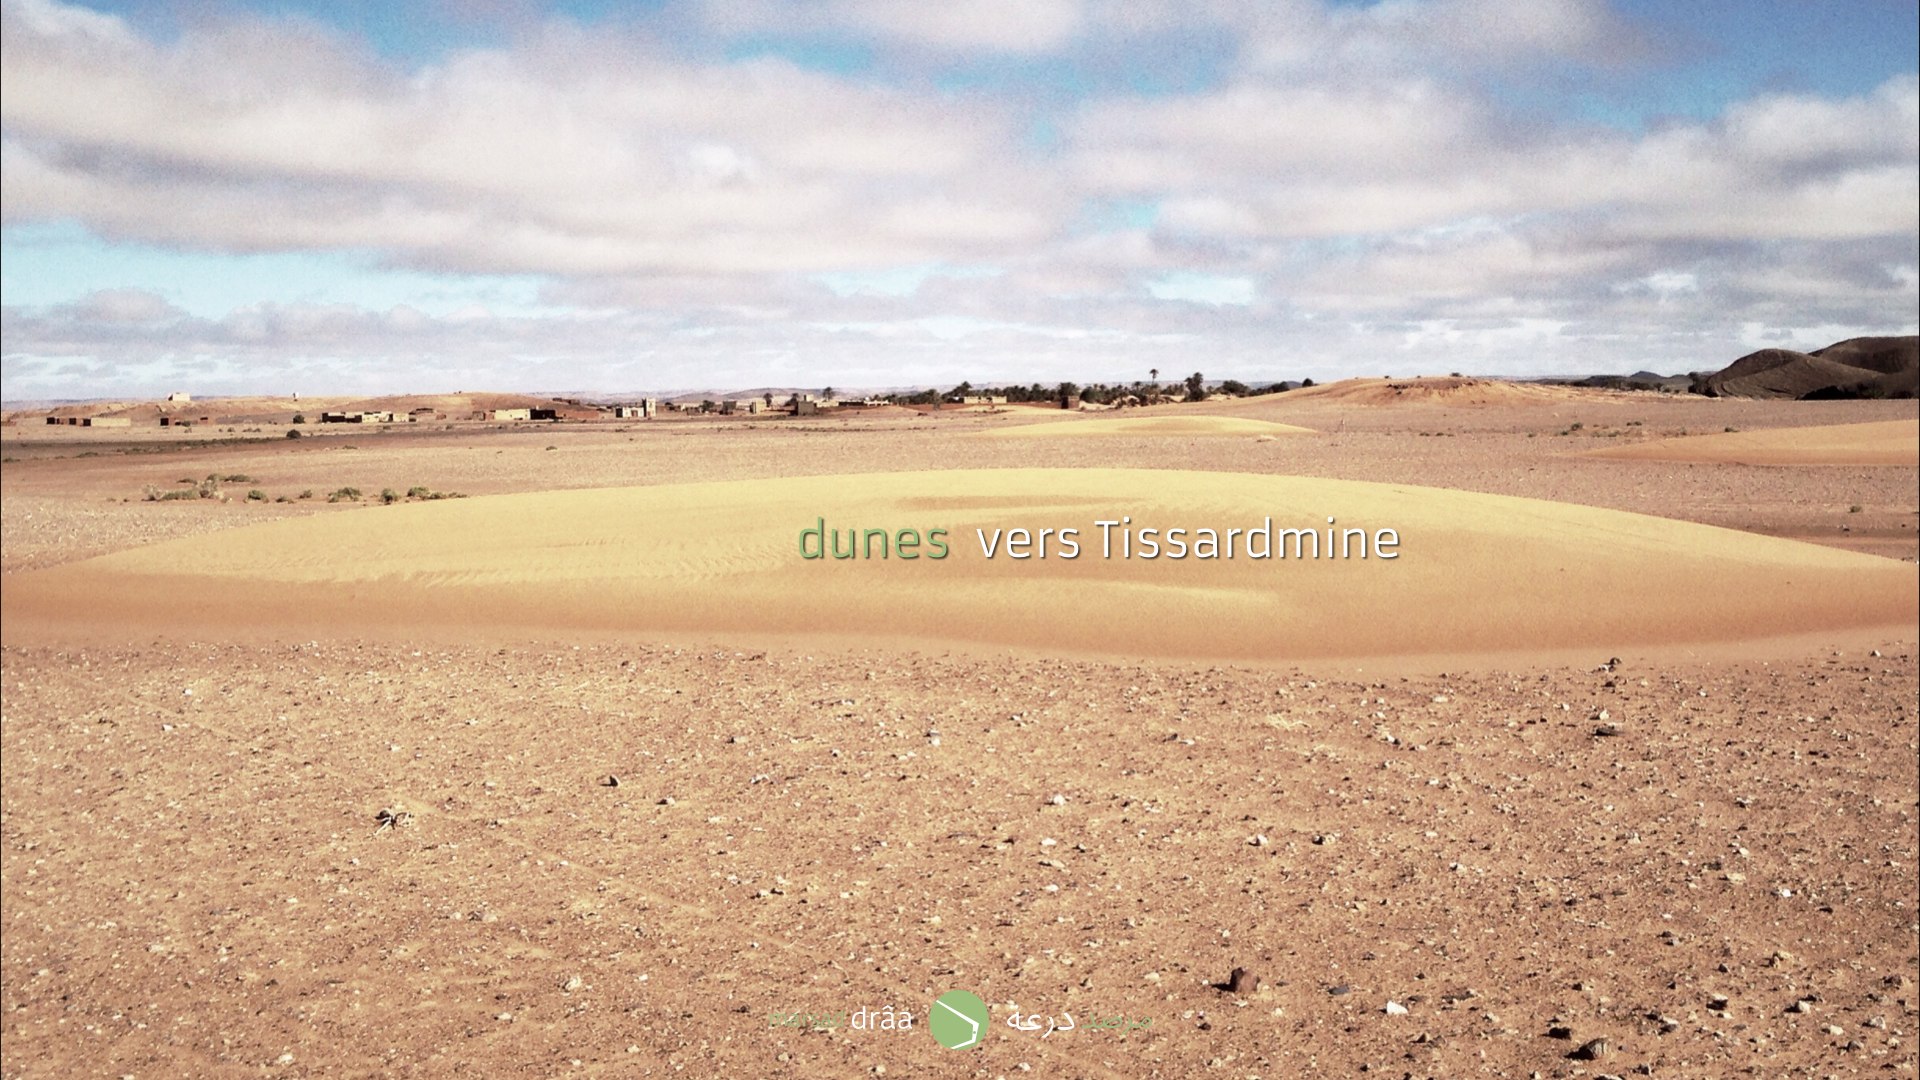   Des dunes qui se dirigent vers le village de Tissardmine (Errachidia).  